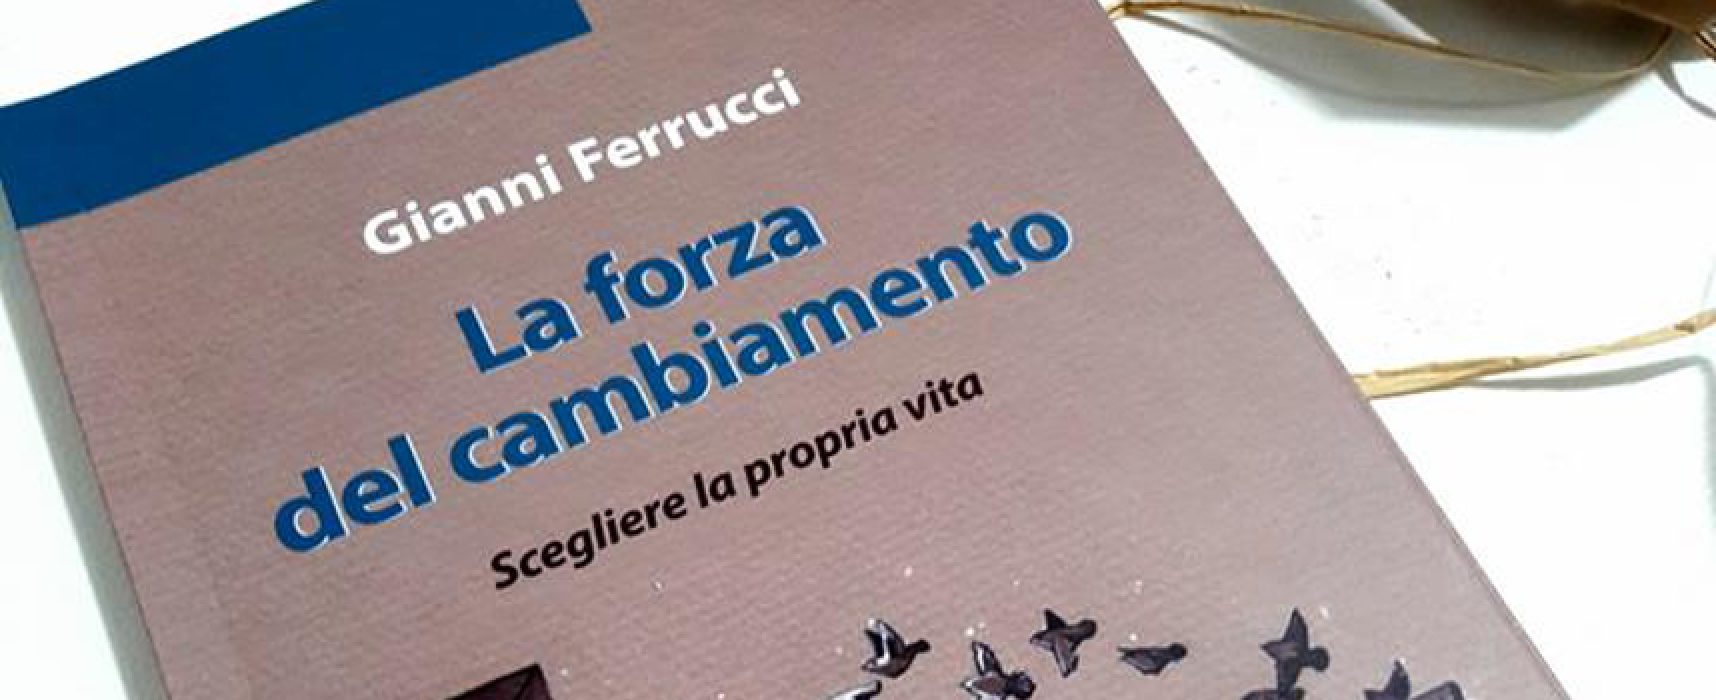 “La forza del cambiamento”, presentazione del libro del dottor Gianni Ferrucci